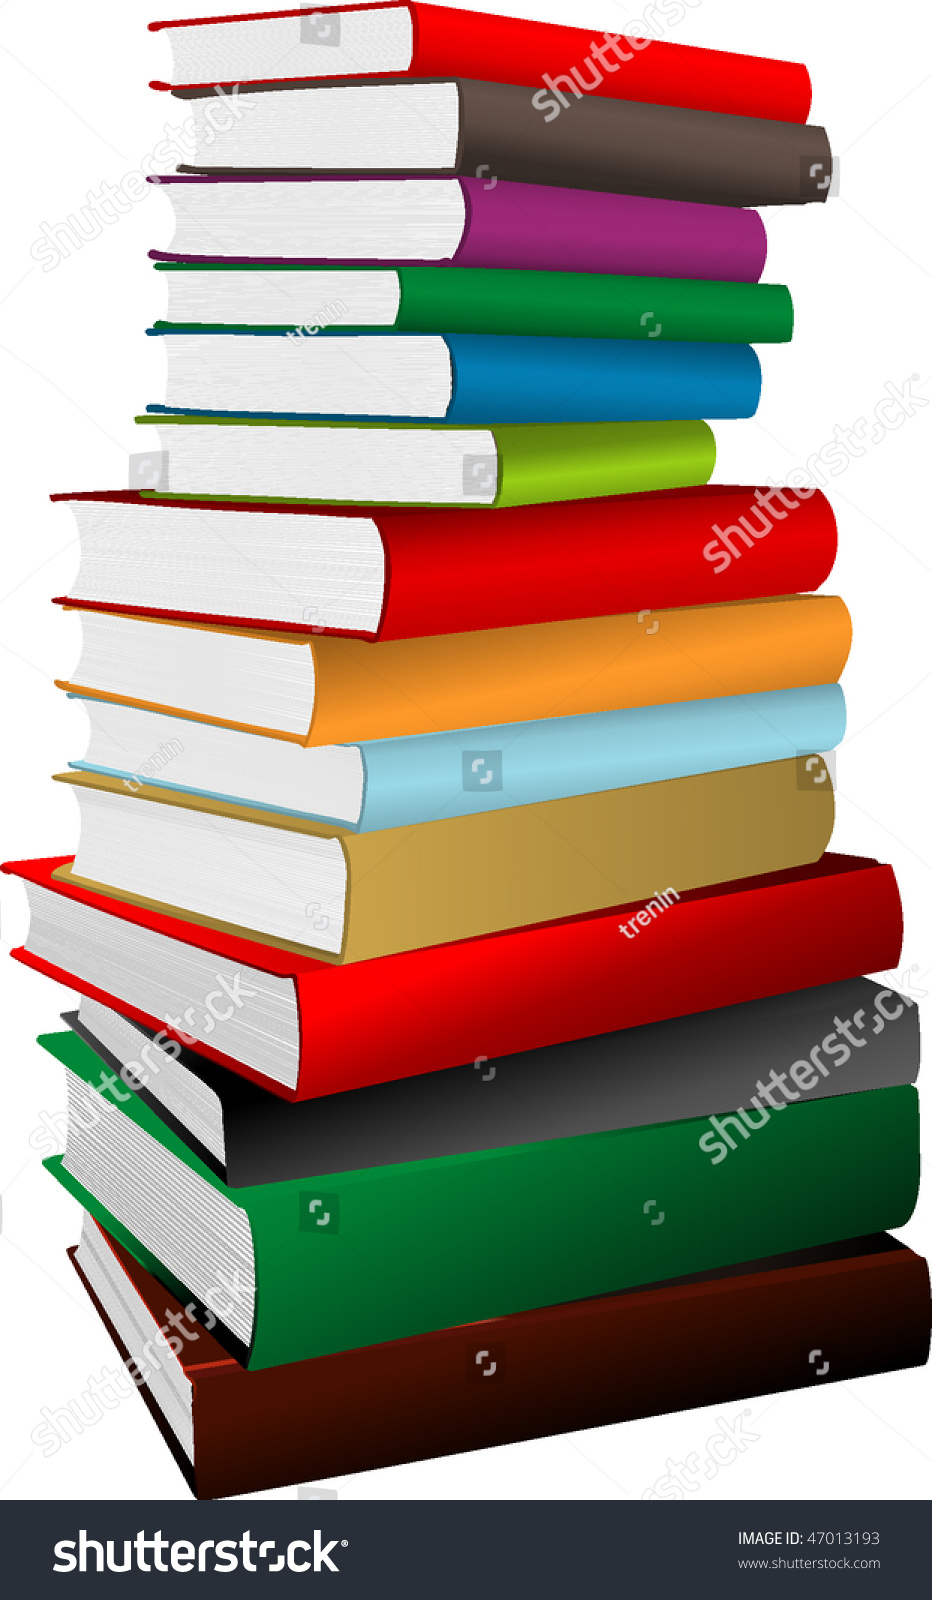 Stack Of Books. Vector Illustration - 47013193 : Shutterstock